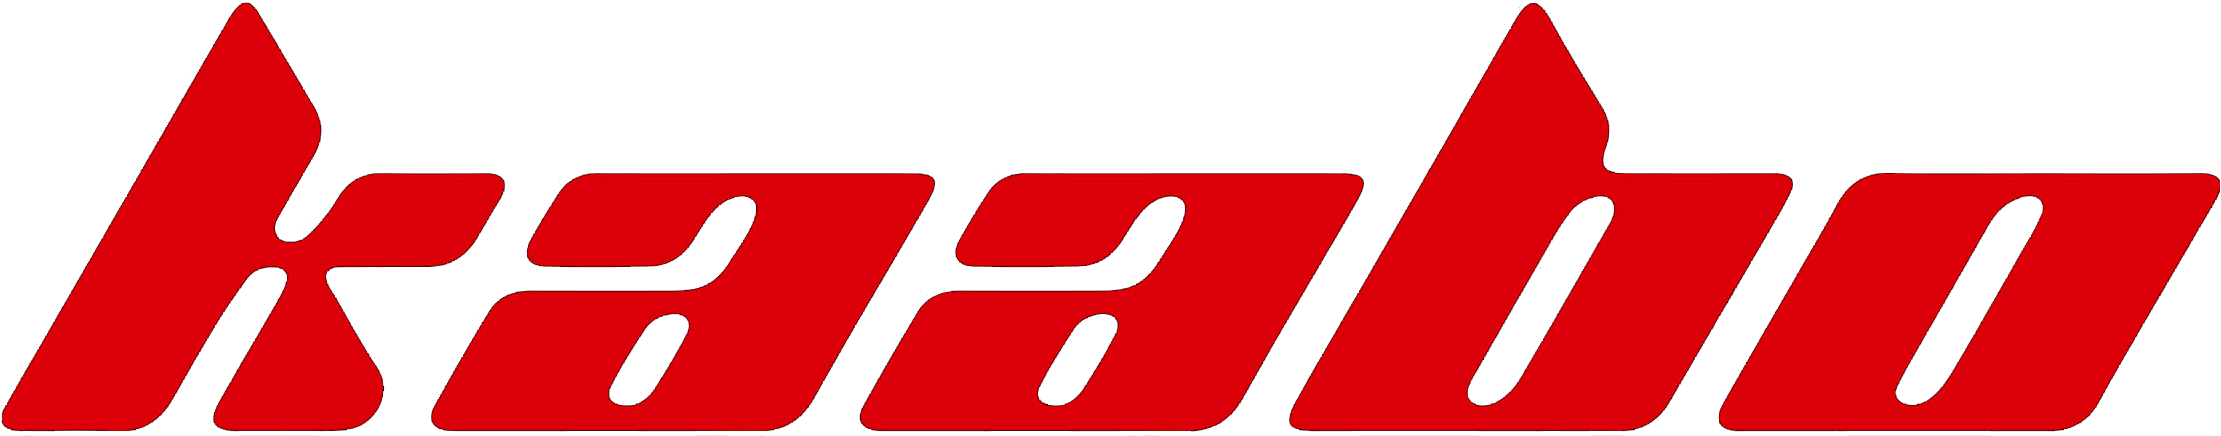 kaabo-logo.png